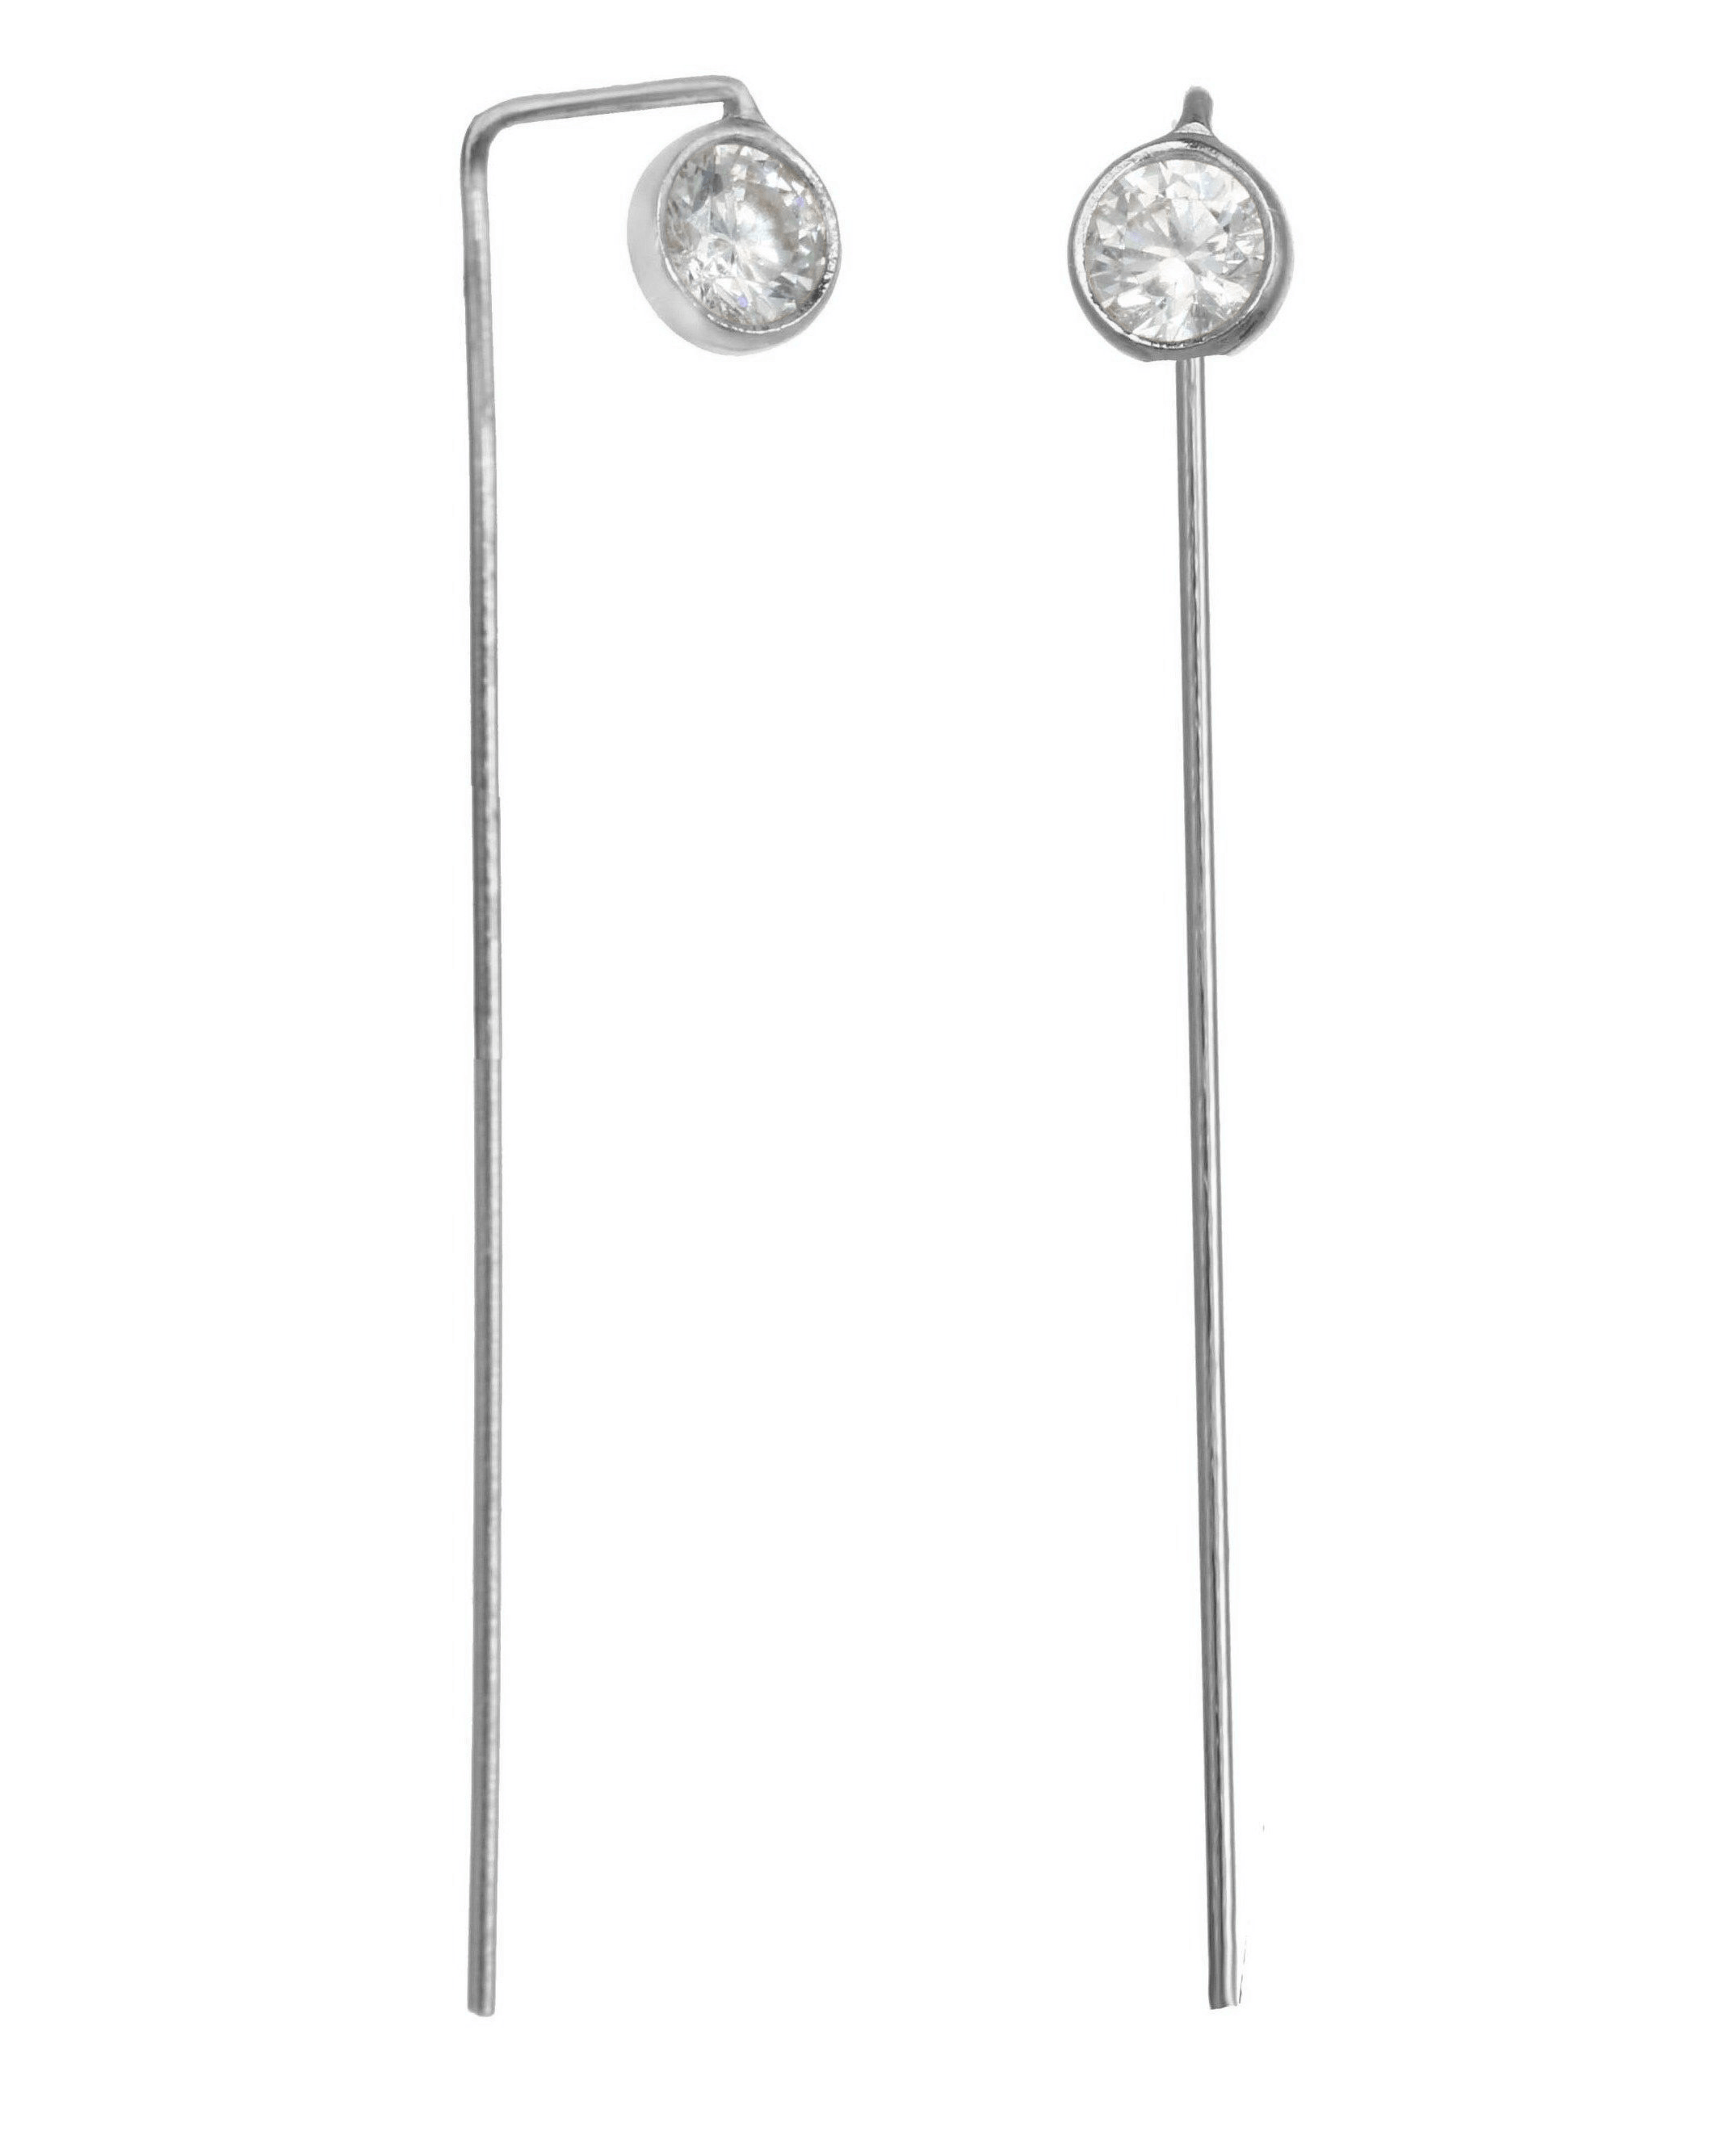 Colleen Earrings by KOZAKH. Bar earrings in Sterling Silver, featuring a 3mm Cubic Zirconia Bezel.